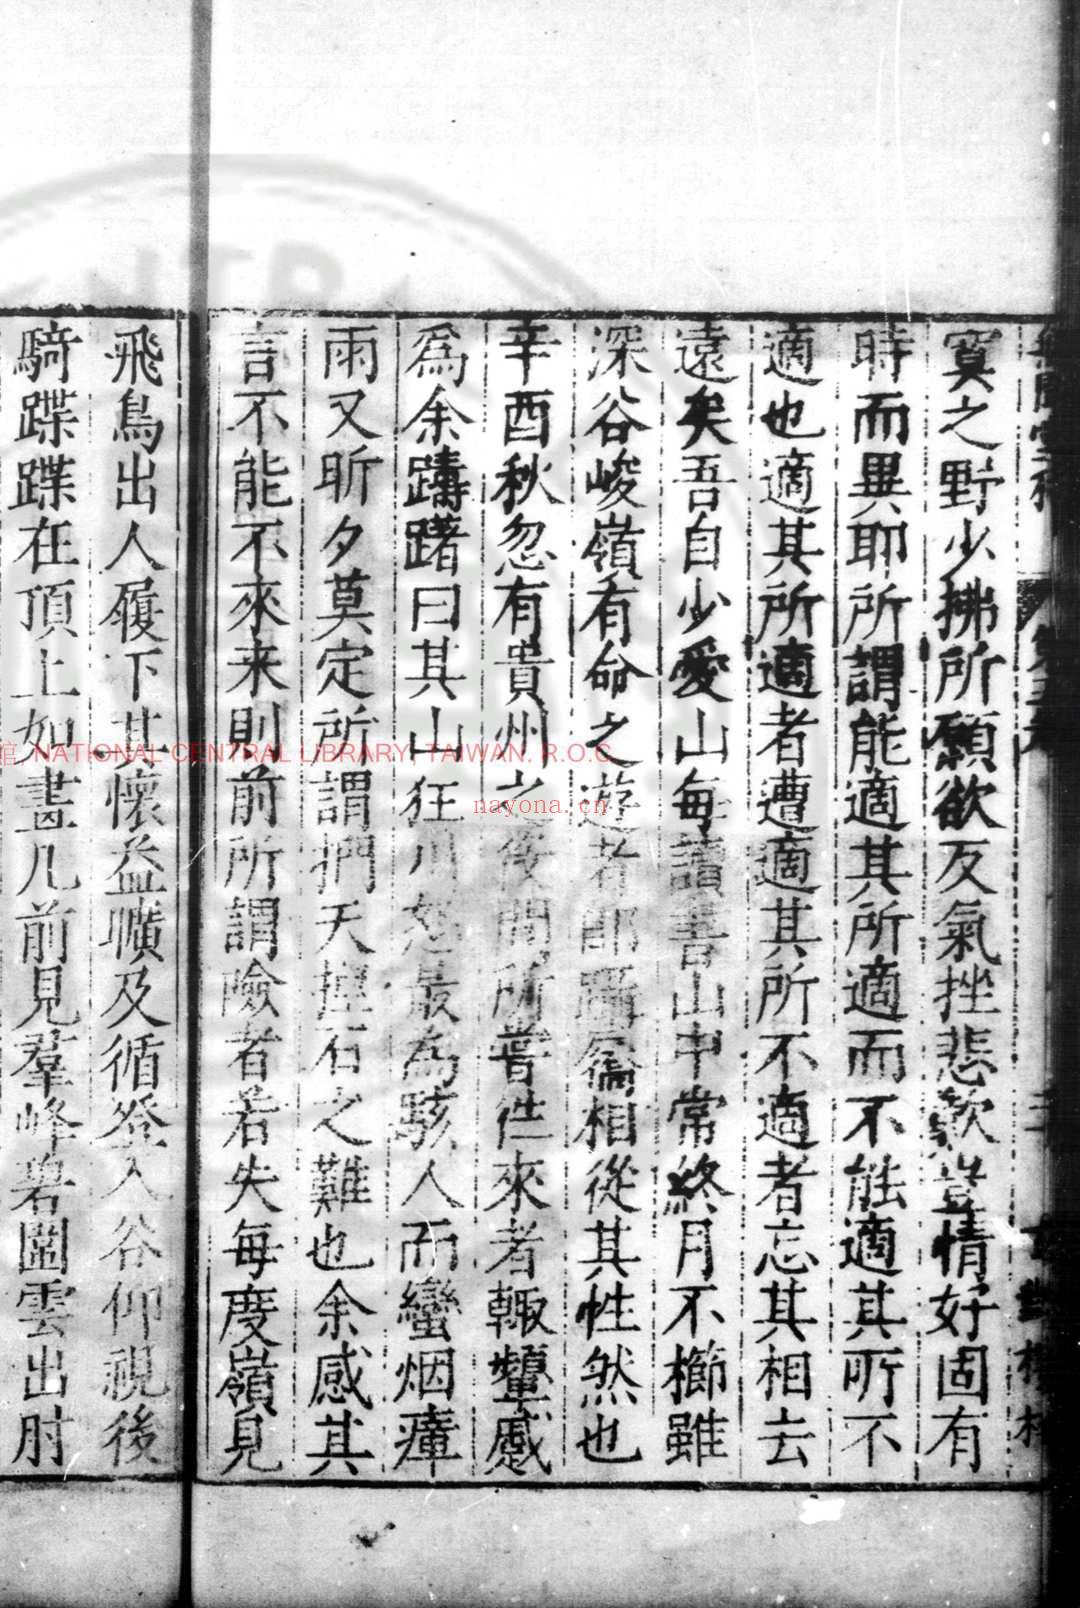 无闻堂稿 (明)赵釴撰 明隆庆六年(1572)桐城赵氏玄对楼刊本